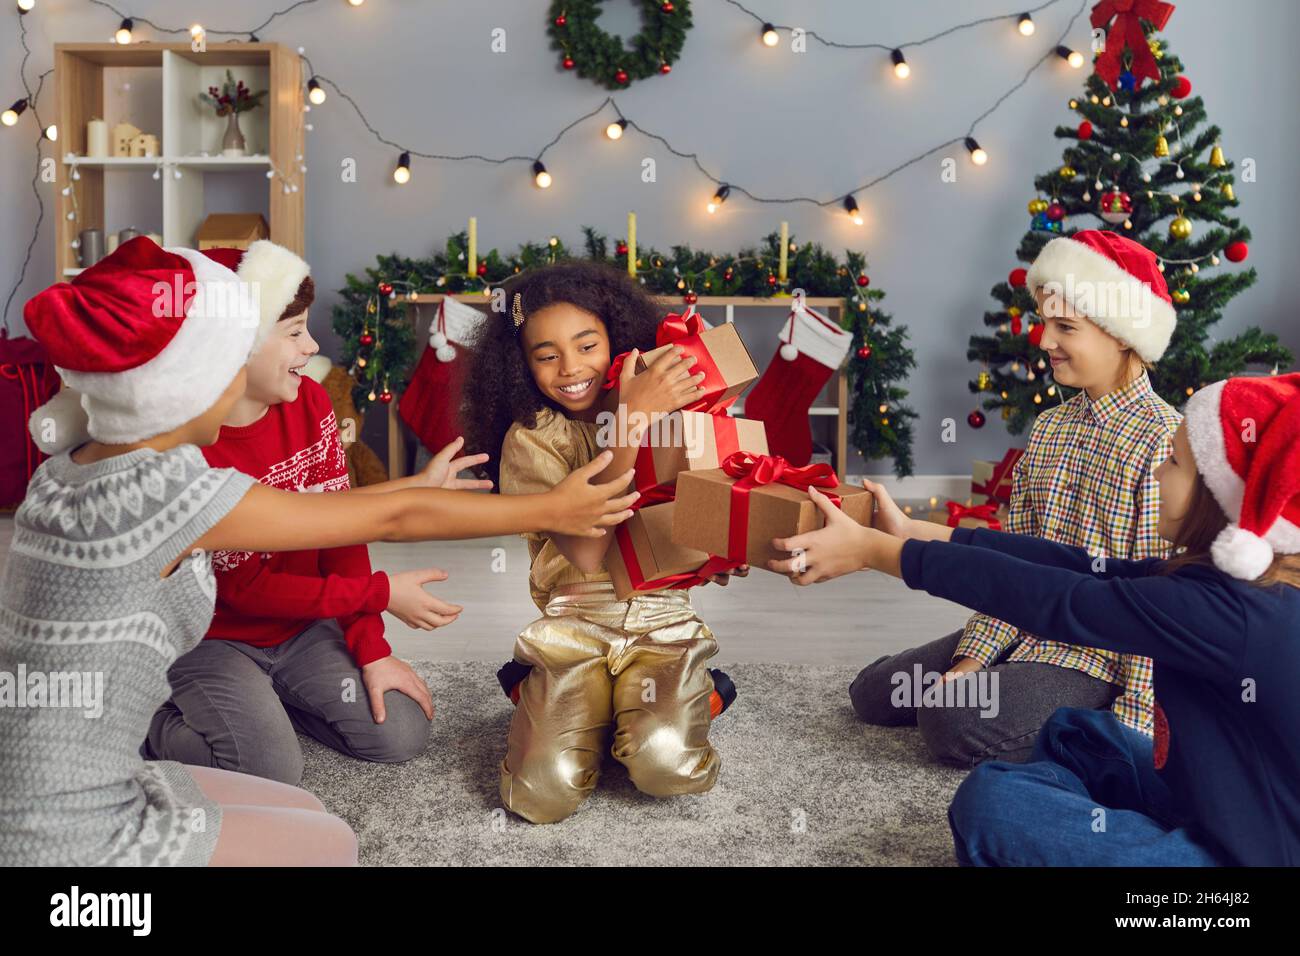 Gruppo di bambini ridenti felici che danno regali di Natale alla loro sorella o amico Foto Stock